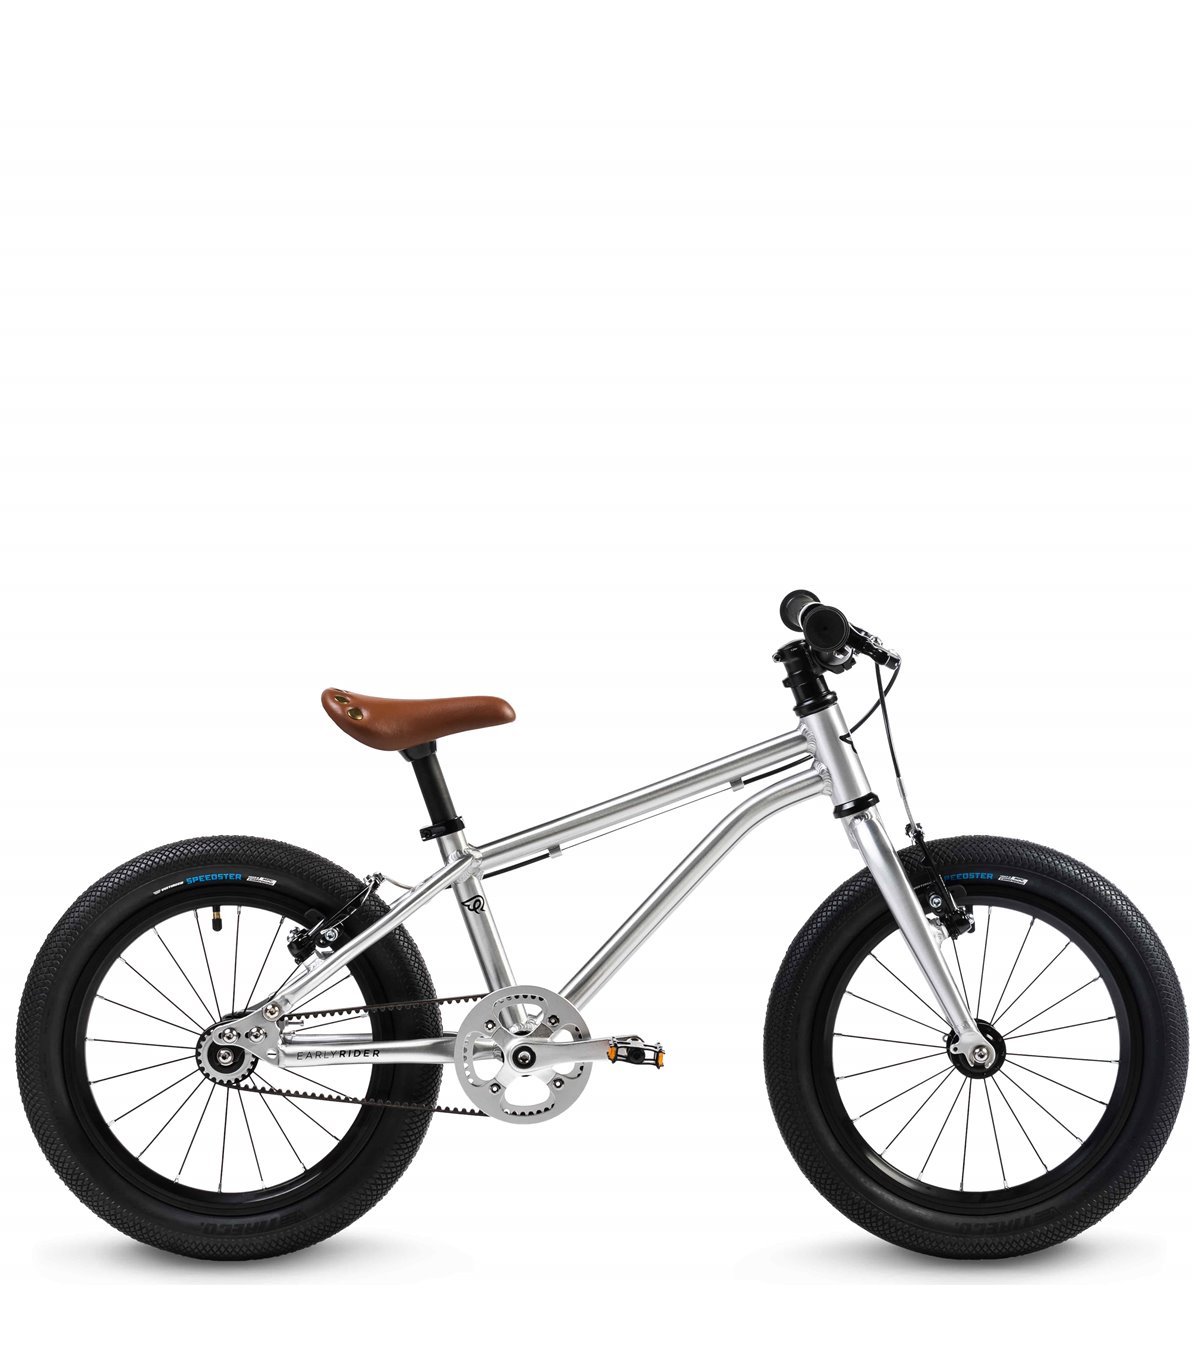 Acheter Early Rider Belter Vélo Pour Enfants ✓5.9kg